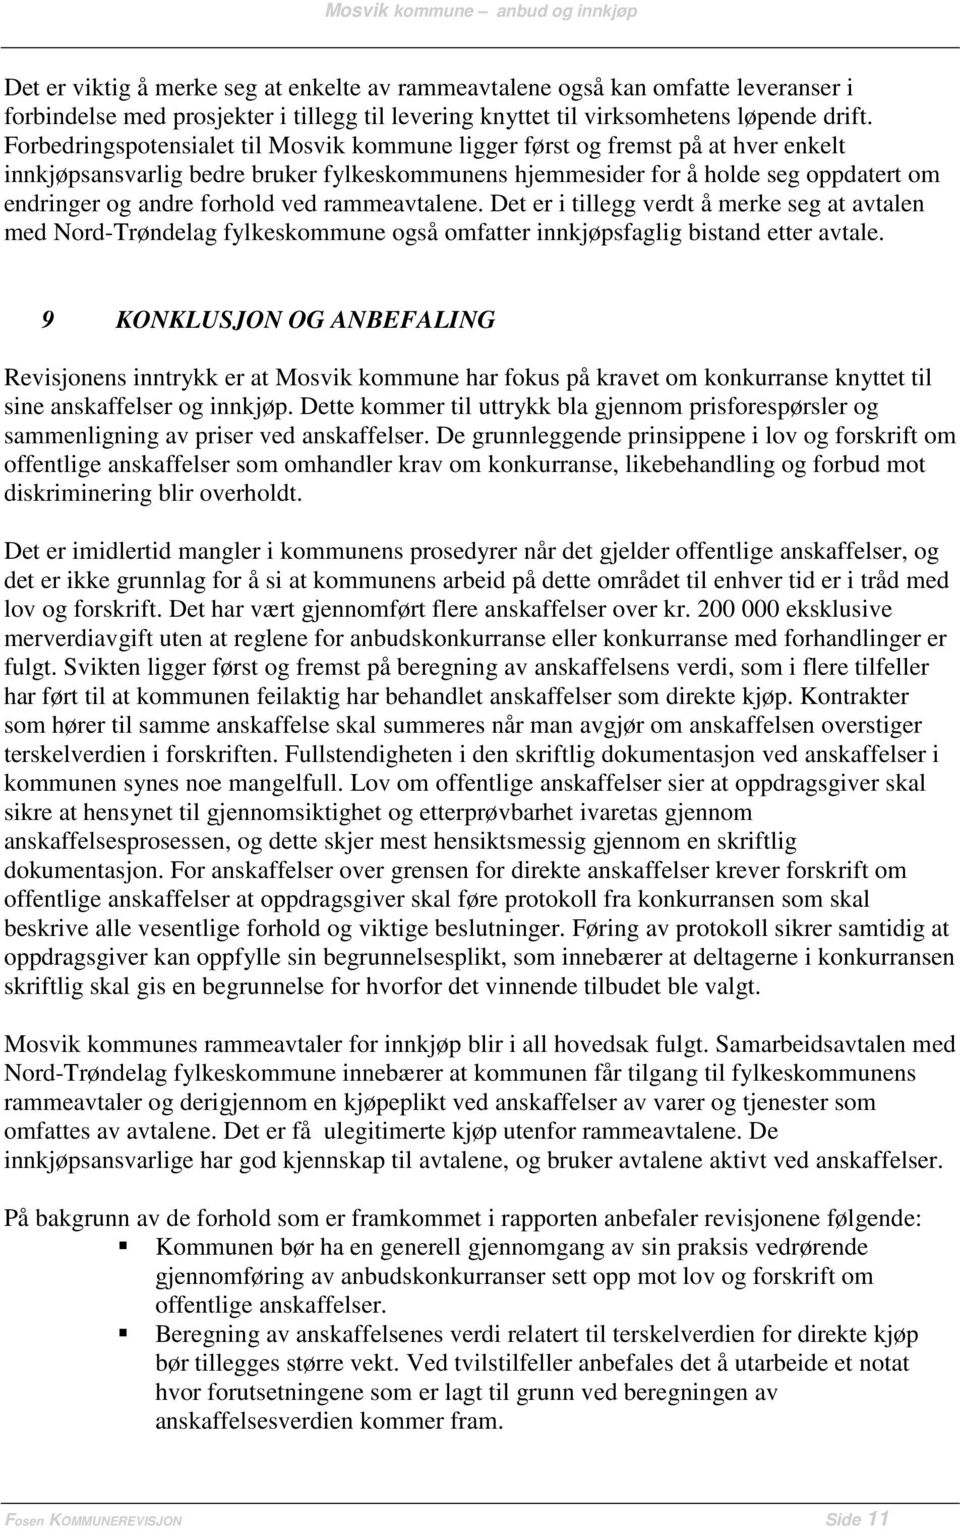 ved rammeavtalene. Det er i tillegg verdt å merke seg at avtalen med Nord-Trøndelag fylkeskommune også omfatter innkjøpsfaglig bistand etter avtale.